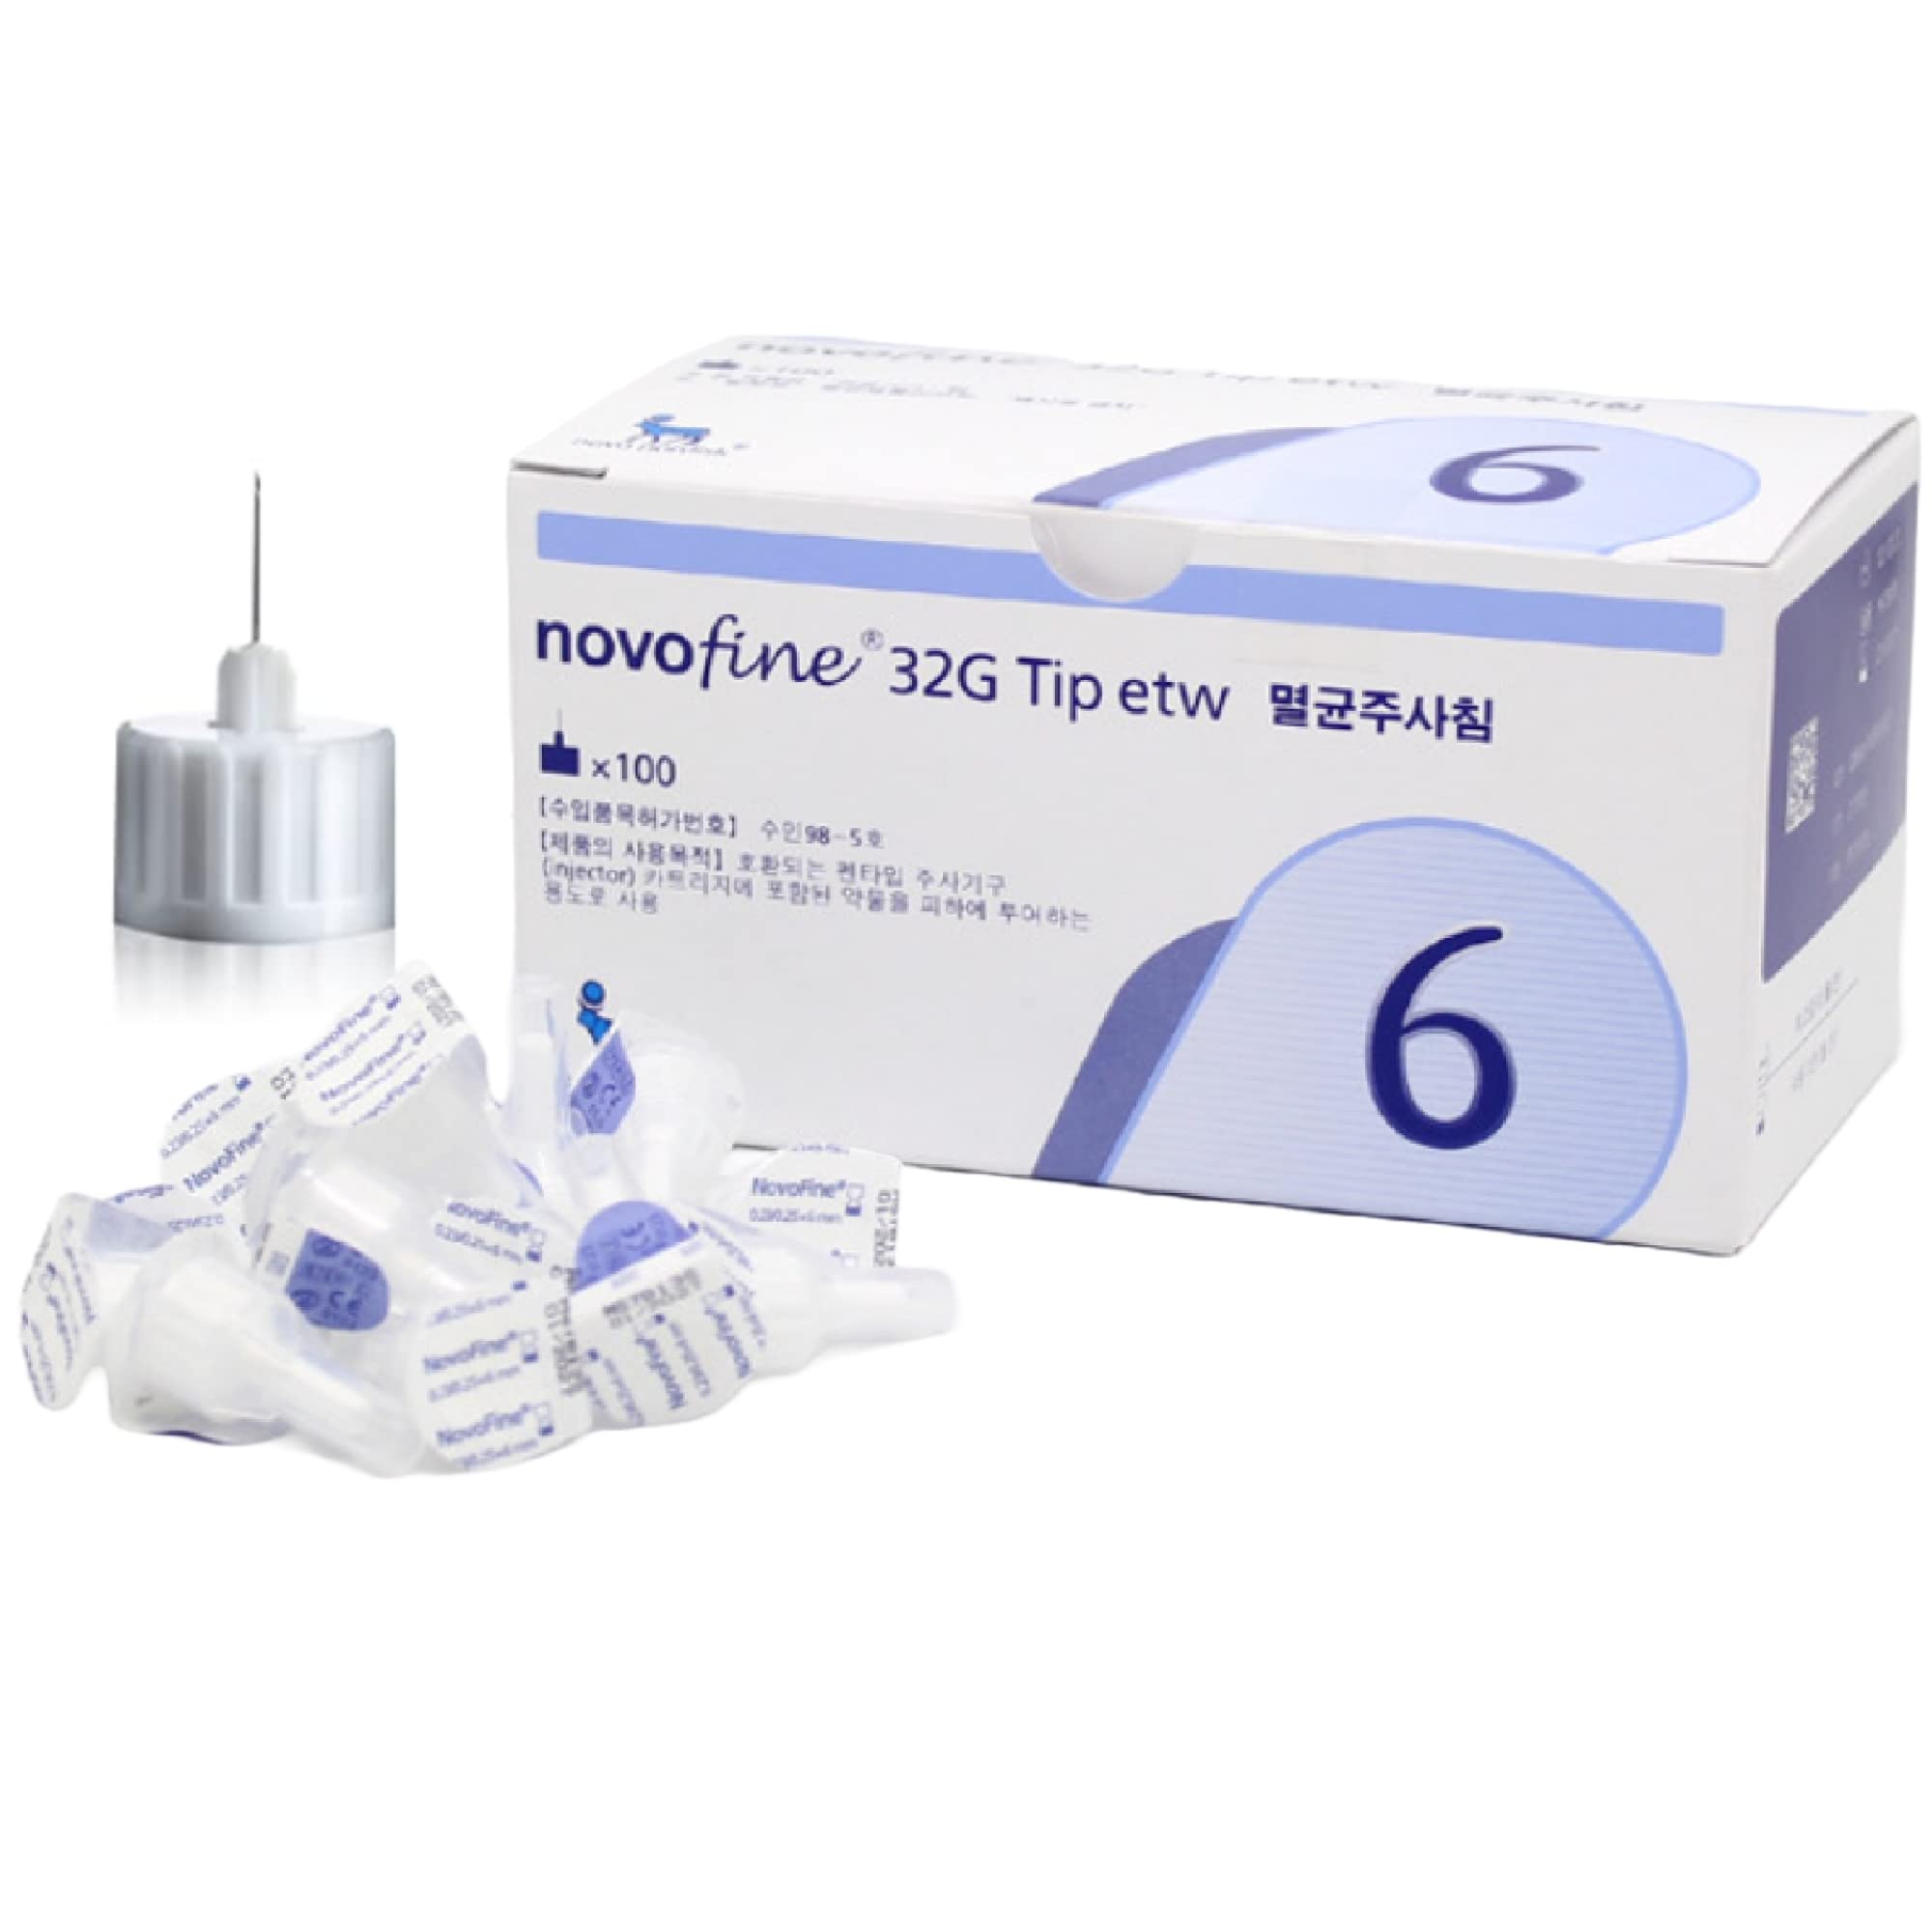 lot (11) box 100 ct boxes 1100 NovoFine 32G Tip x6 mm Diabetic Pen